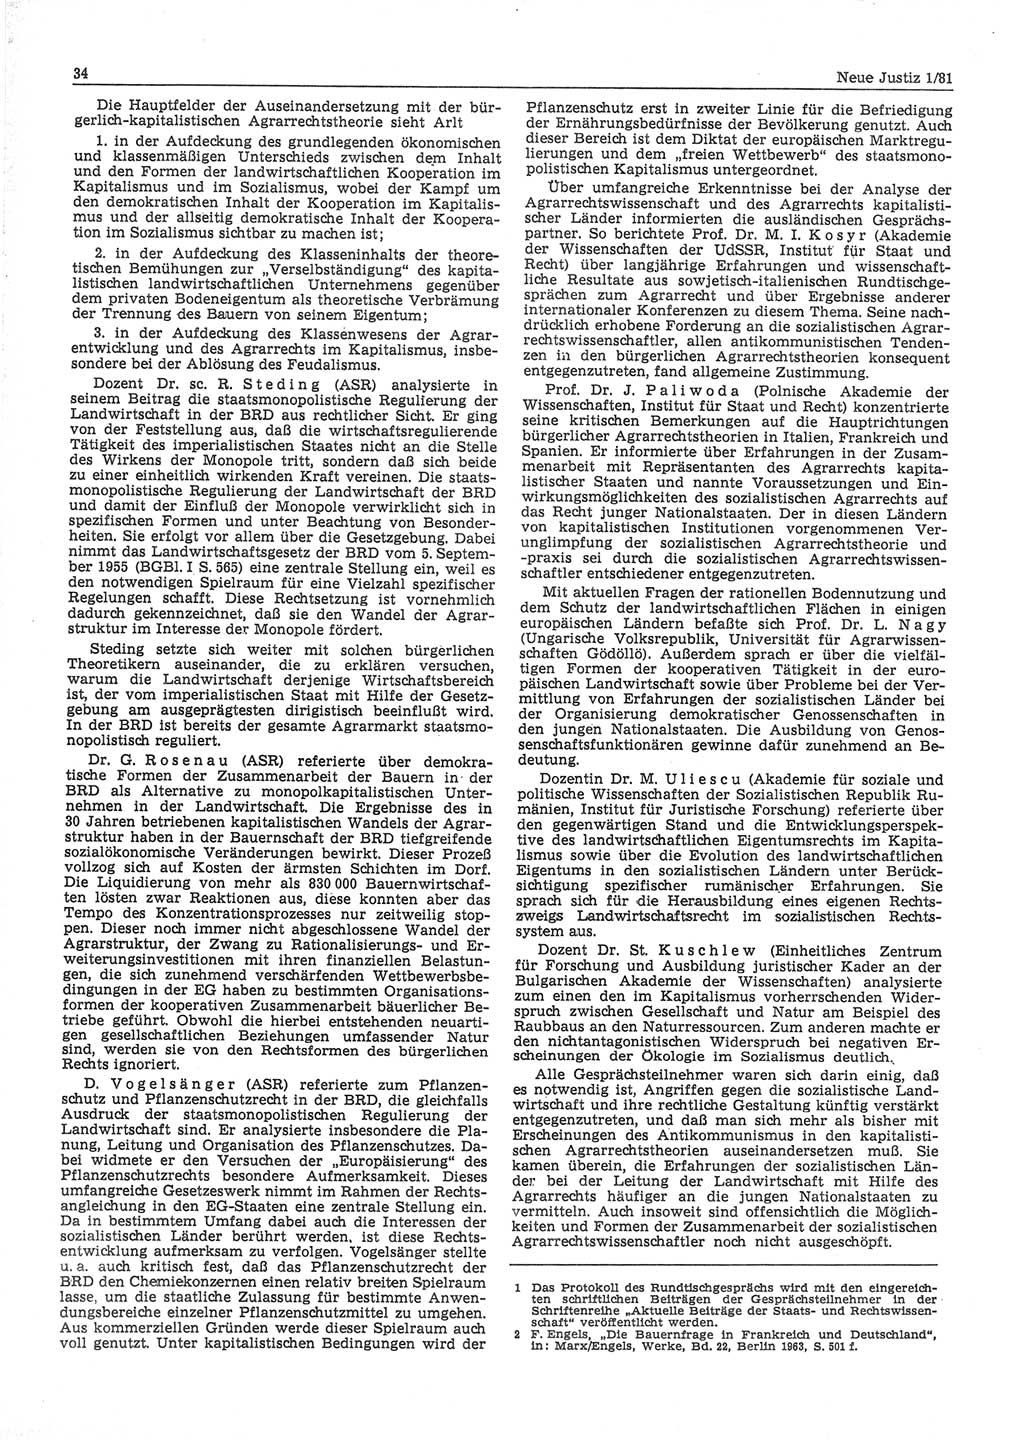 Neue Justiz (NJ), Zeitschrift für sozialistisches Recht und Gesetzlichkeit [Deutsche Demokratische Republik (DDR)], 35. Jahrgang 1981, Seite 34 (NJ DDR 1981, S. 34)